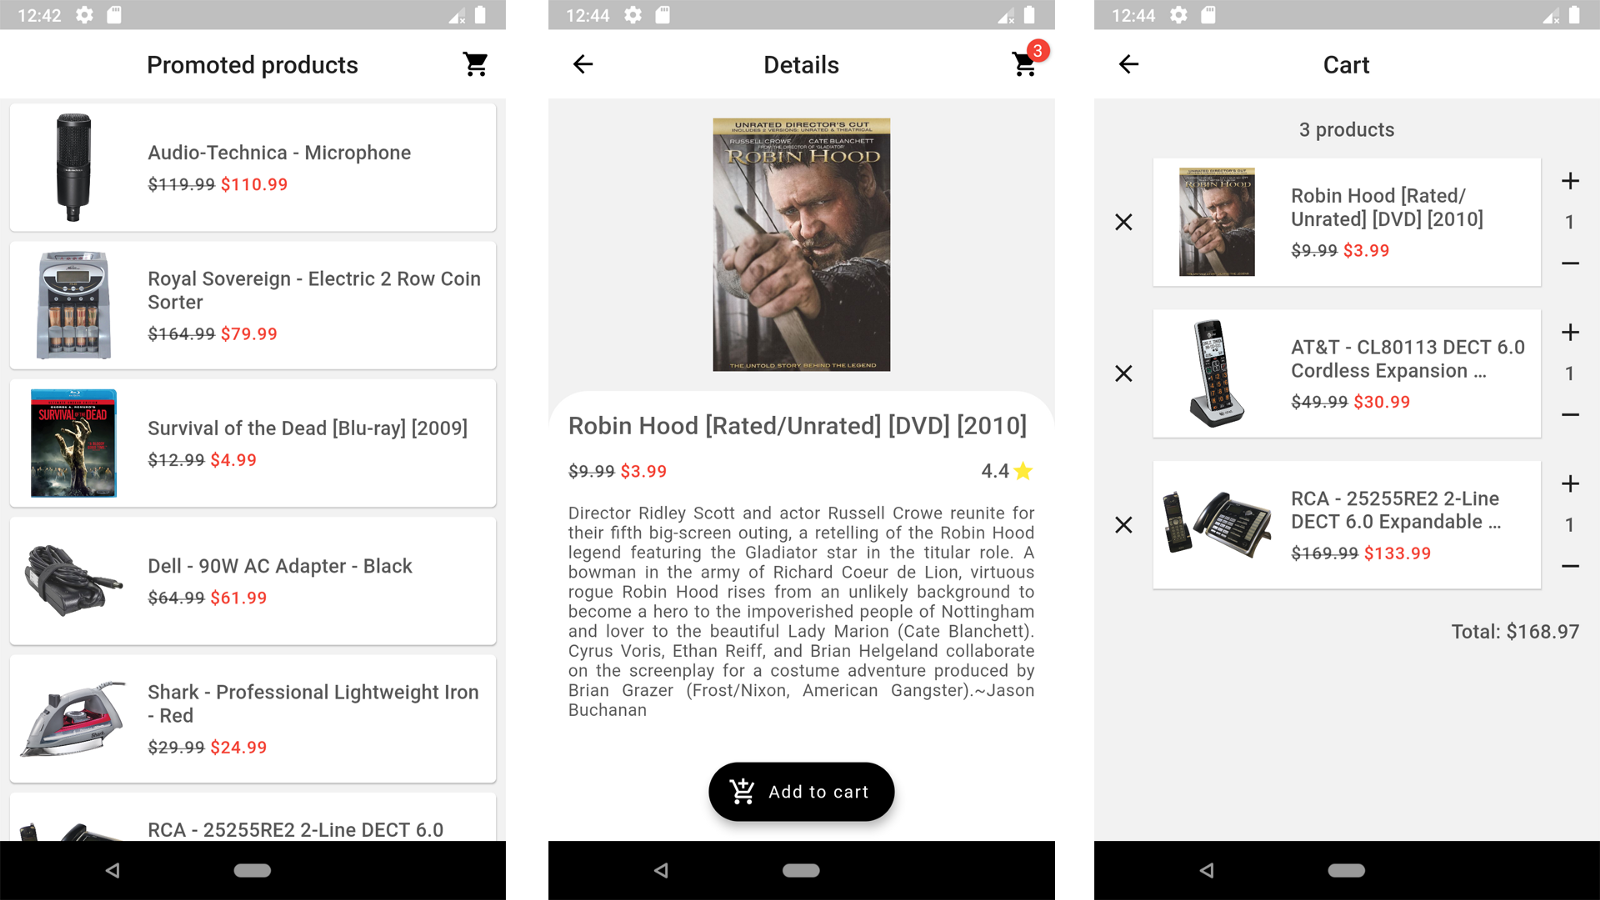 Flutter Shopping App prototype UI